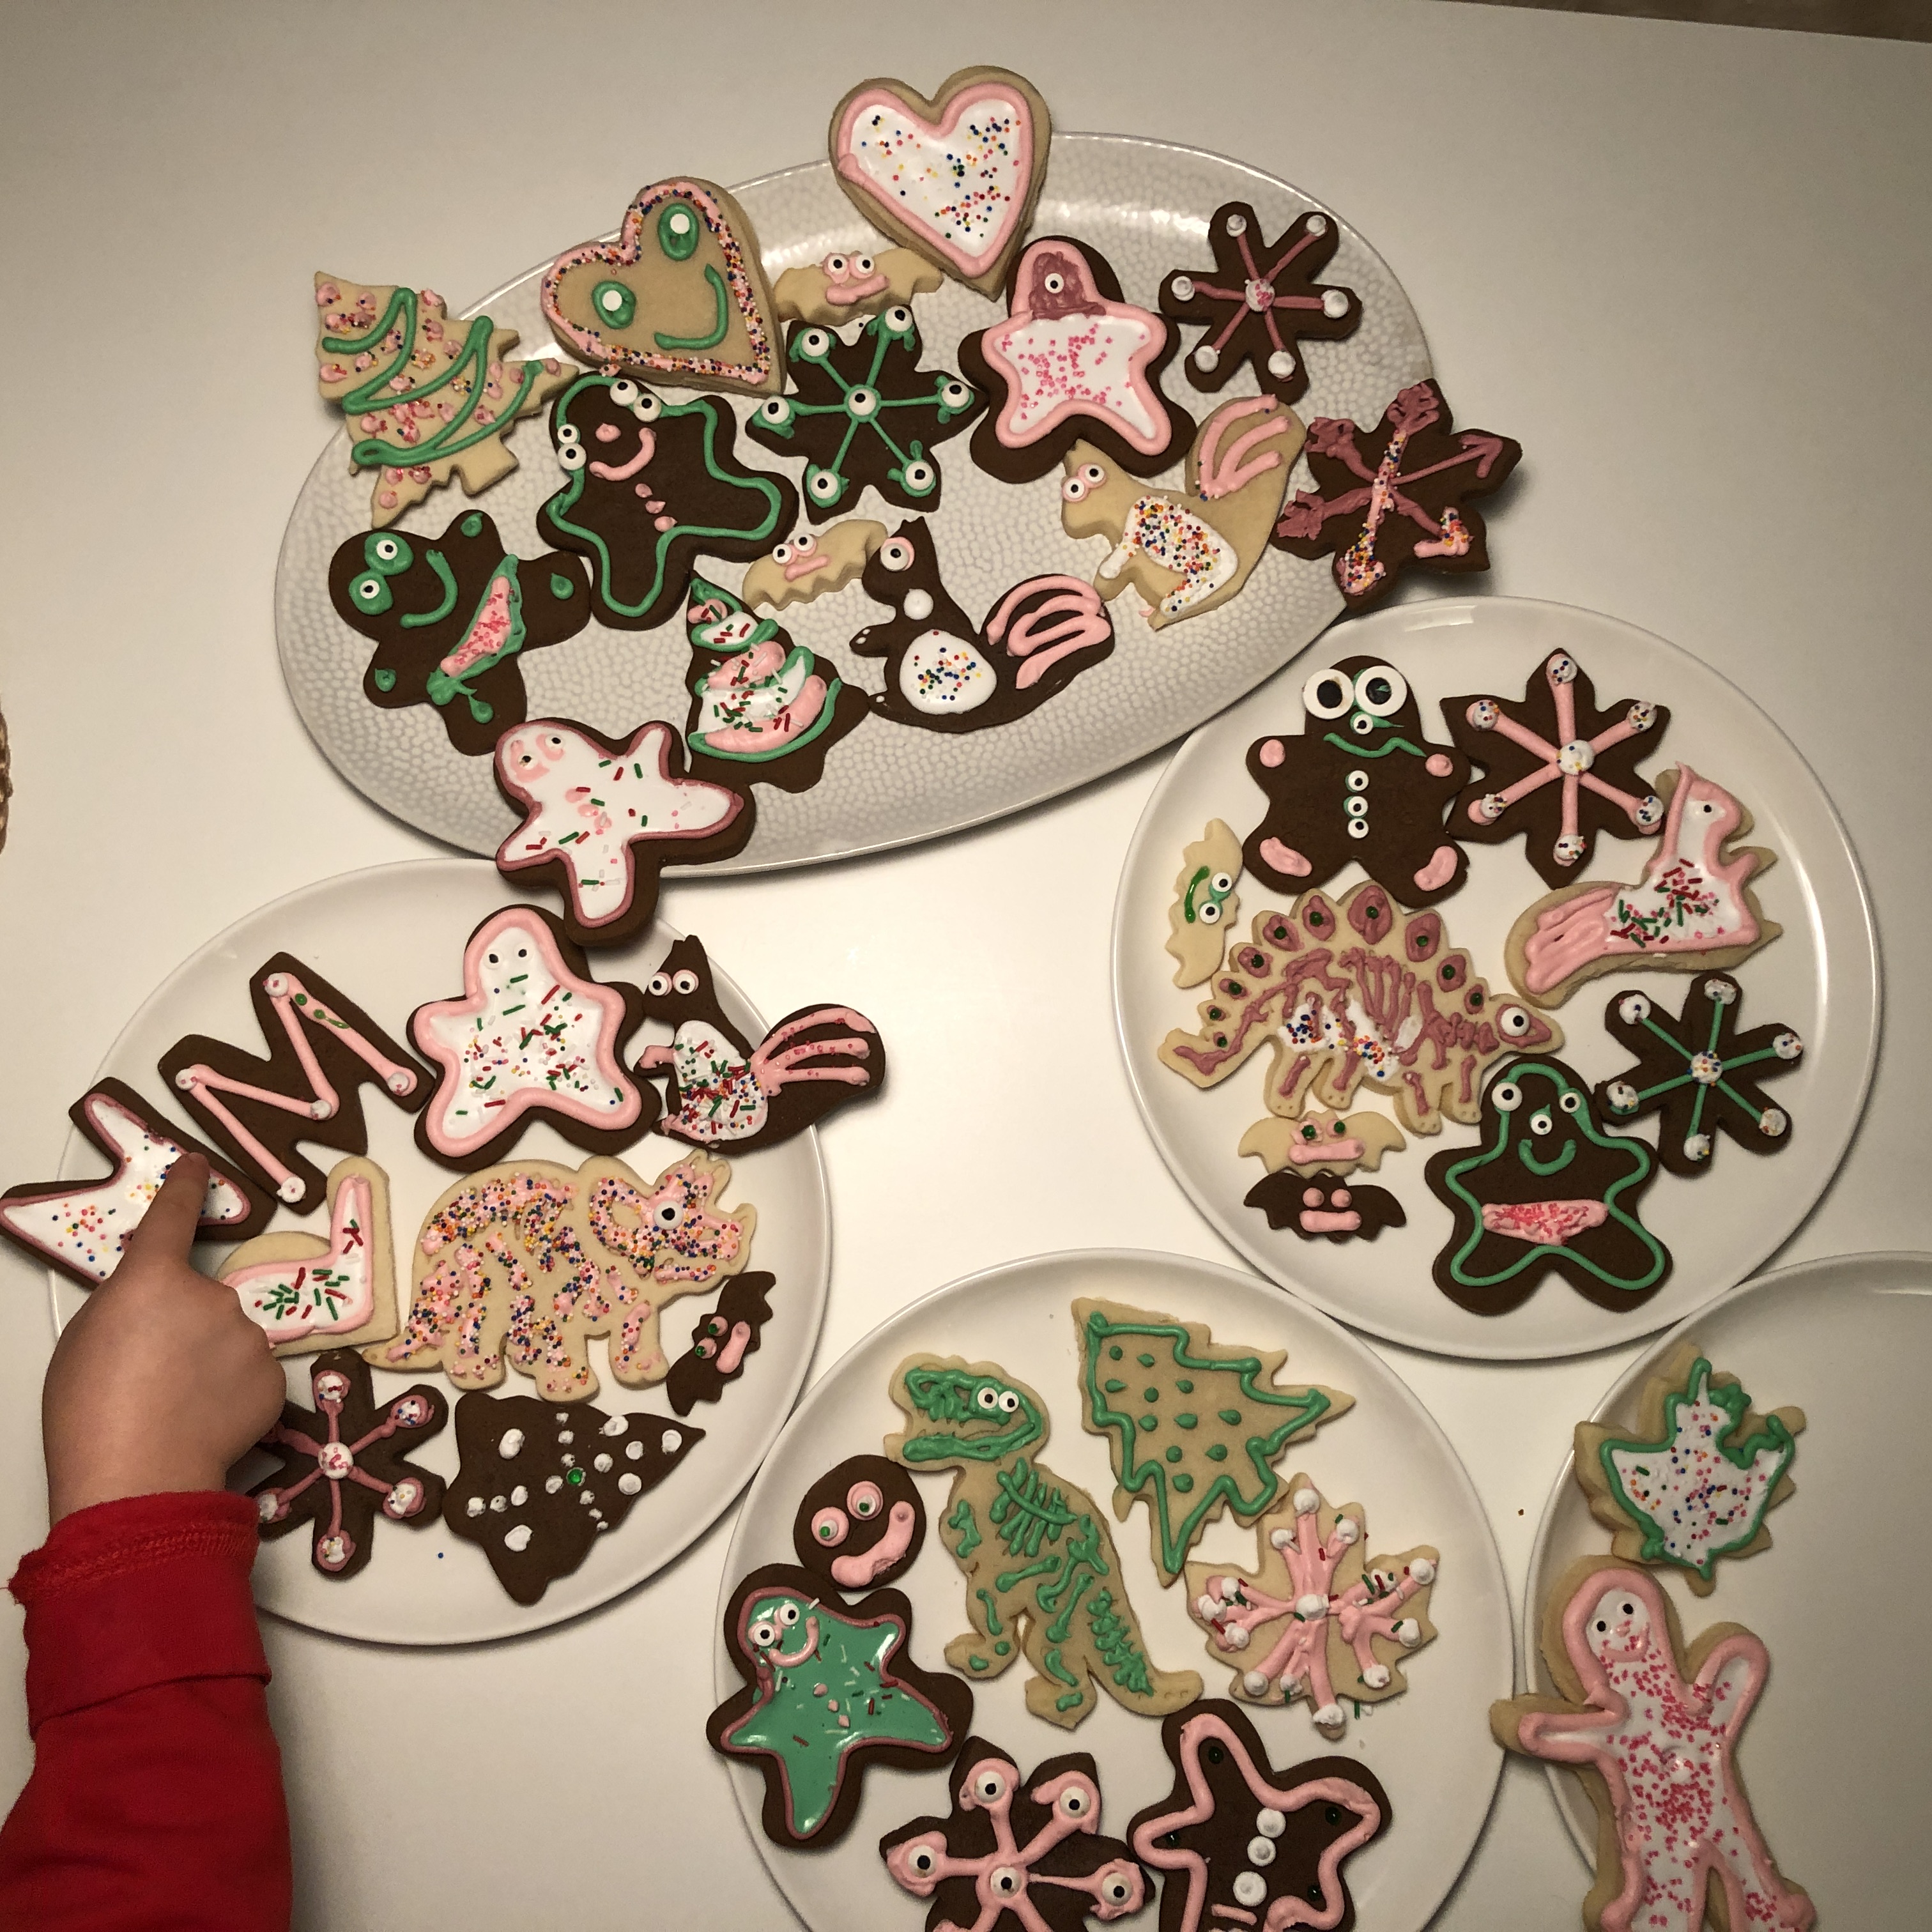 Meera Margaret Singh: image of ornate sugar cookies